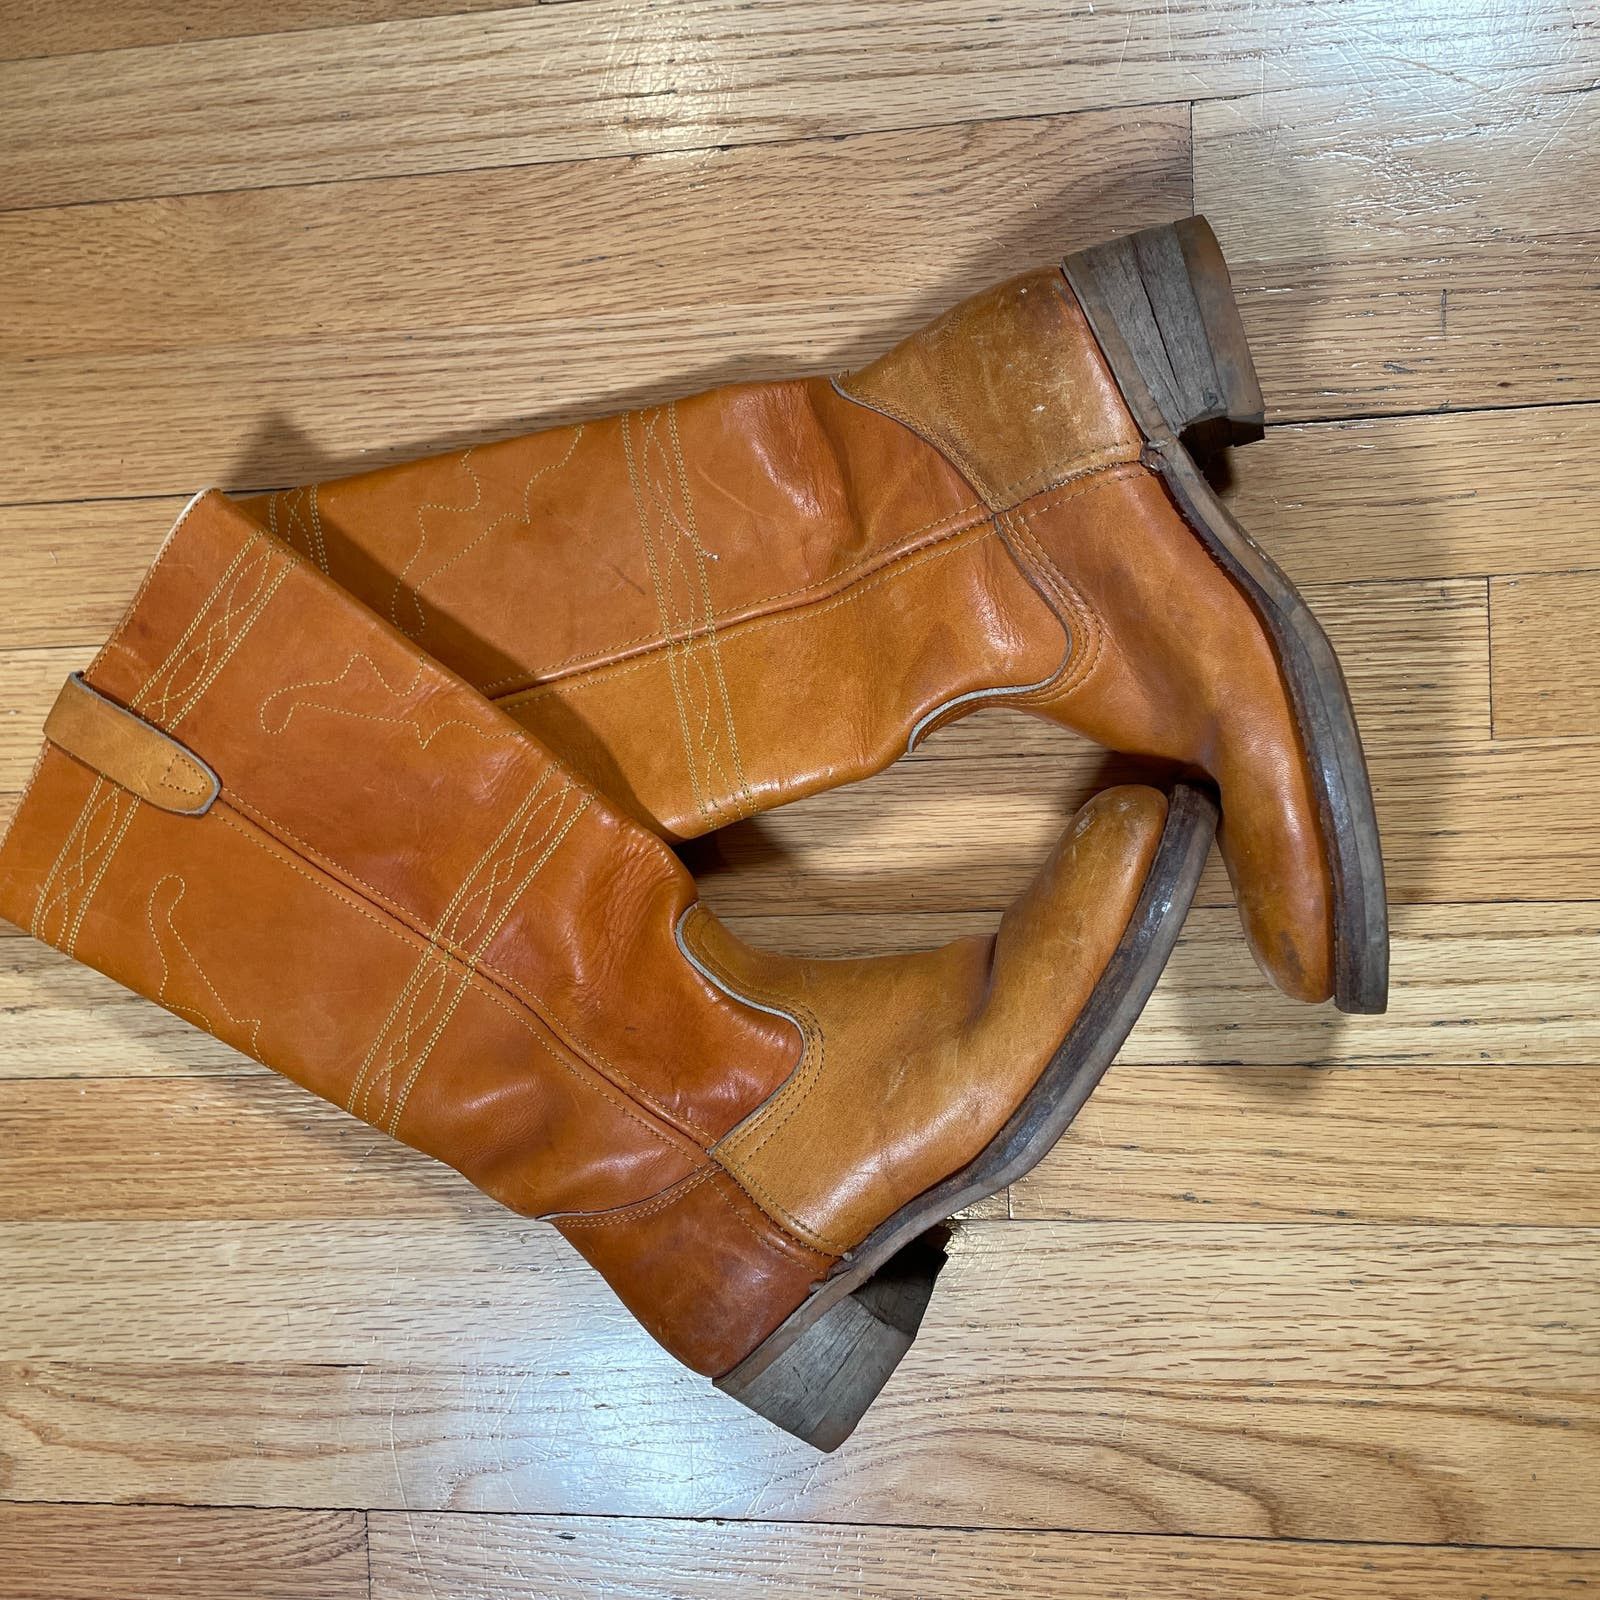 Vintage Vintage Leather Calf Boots 8 Mens Size US 8 / EU 41 - 2 Preview